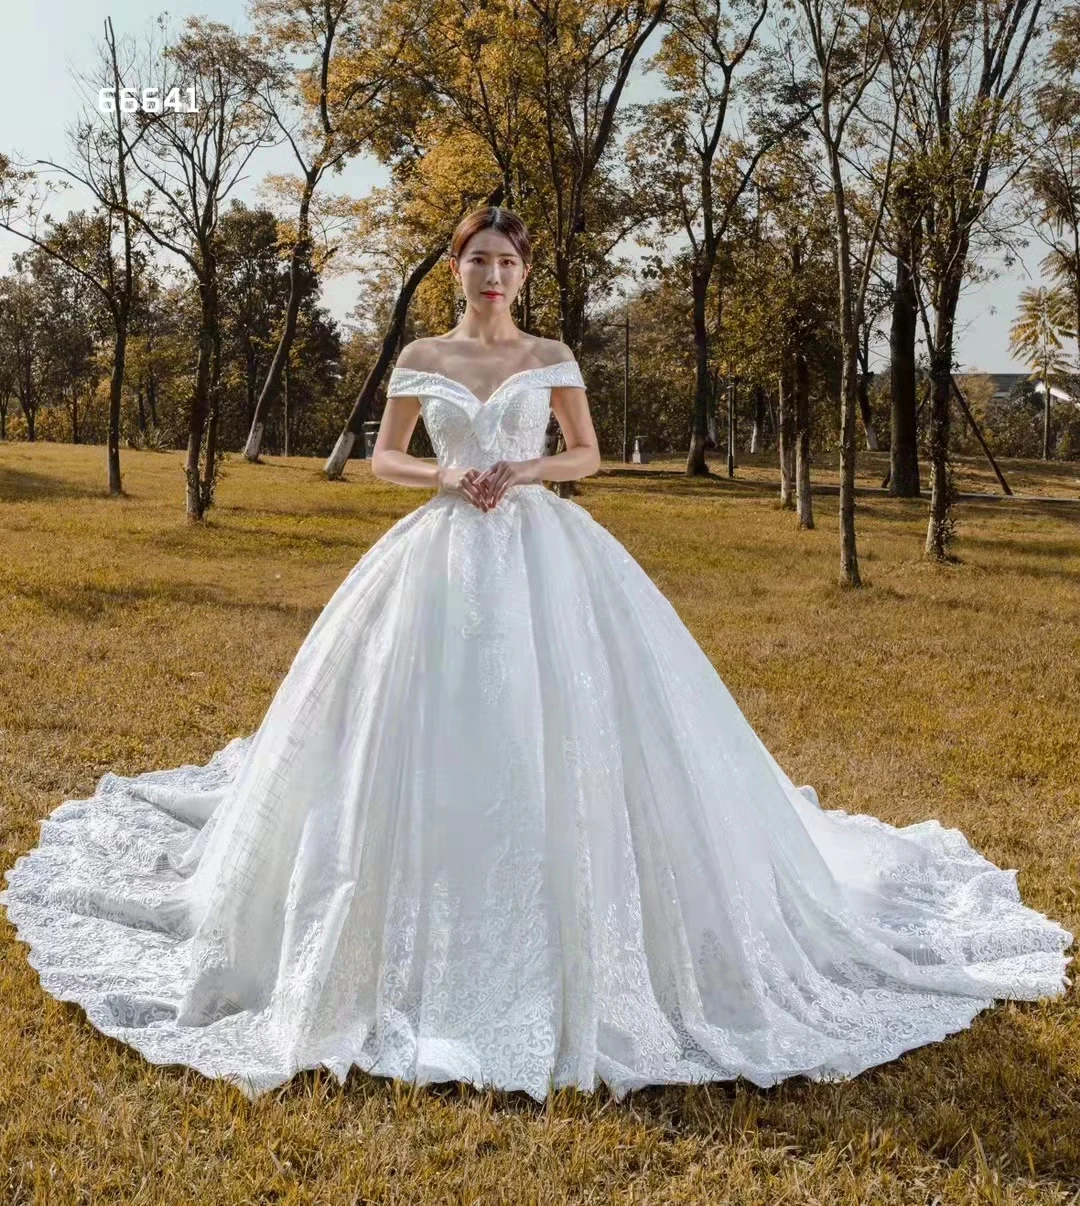 

RSM Collection Luxury Elegant V-neck Off The Shoulder Bridal Wedding Dress 2021 Draped Backless Lace Applique Long Trailing Skir